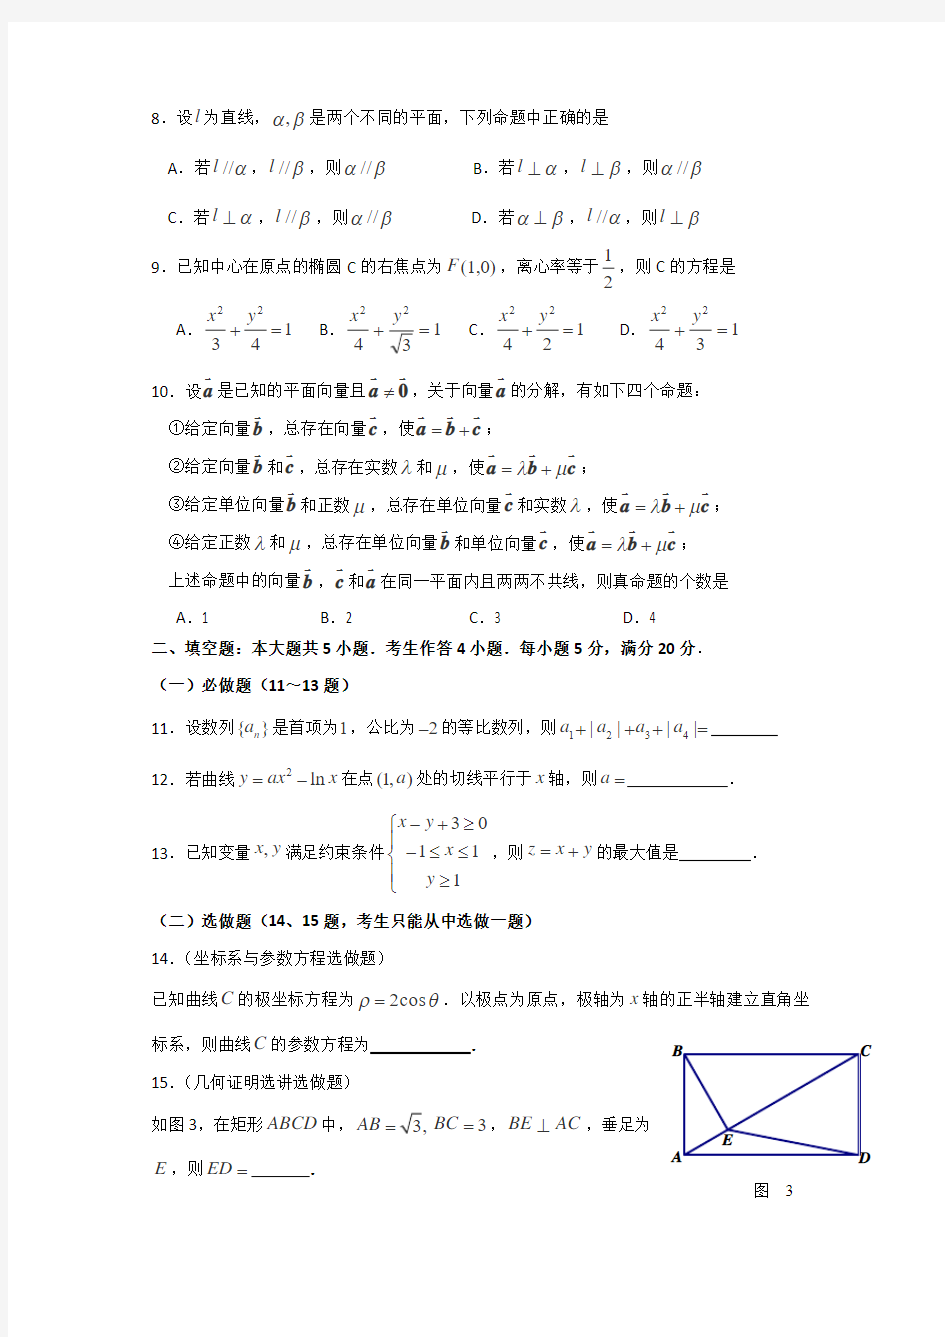 2013年高考文科数学(广东卷)